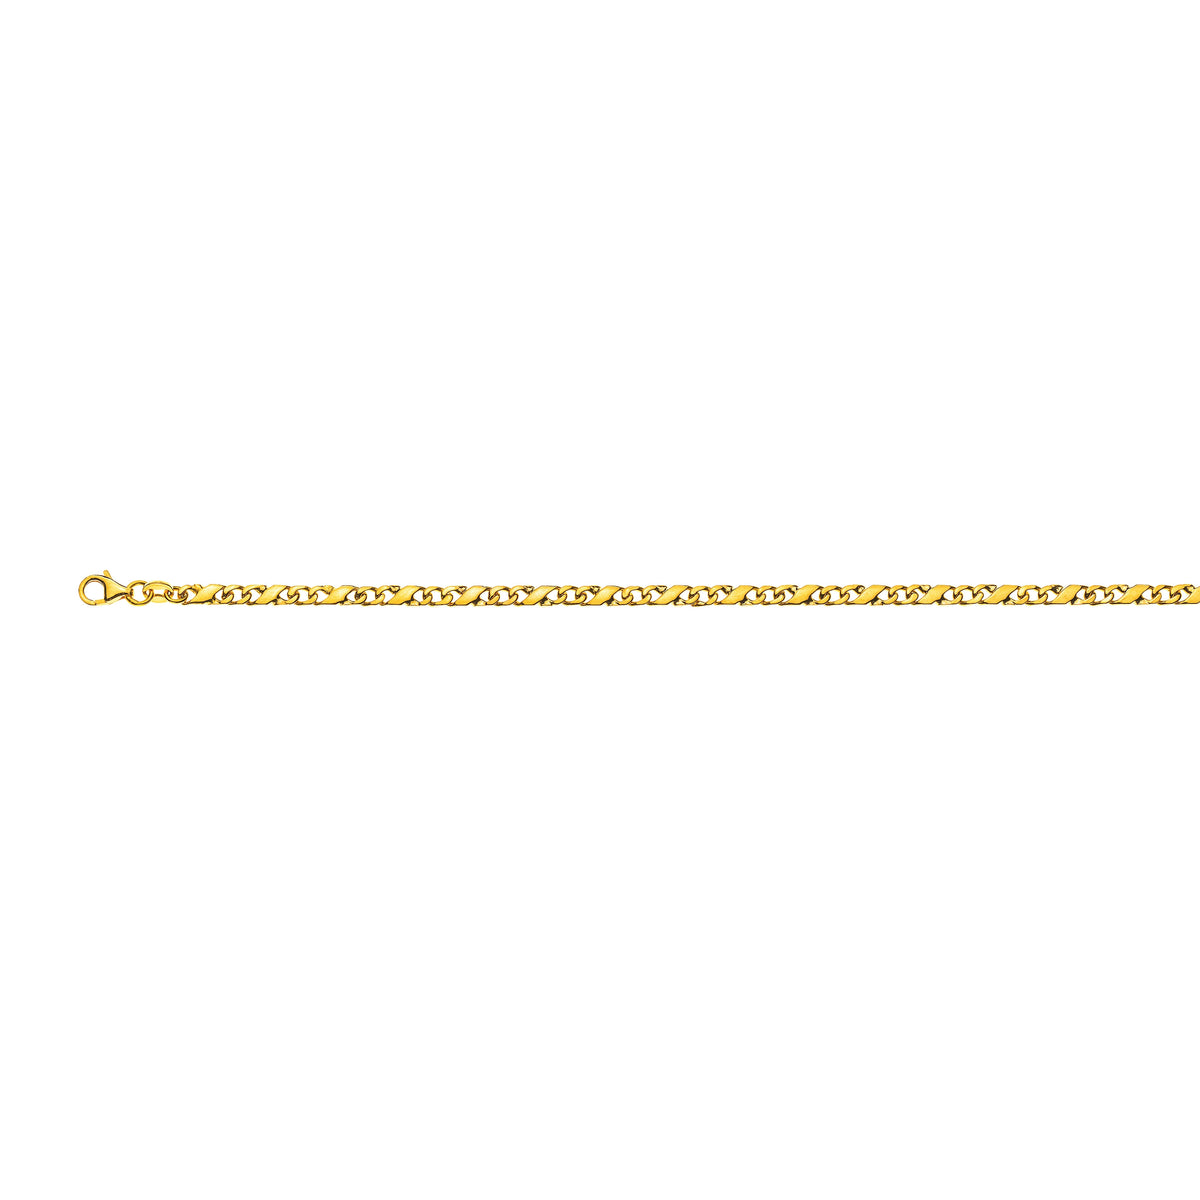 Gelbgold 750 Collier Carrera, Poliert, ca. 3.5 mm Breite